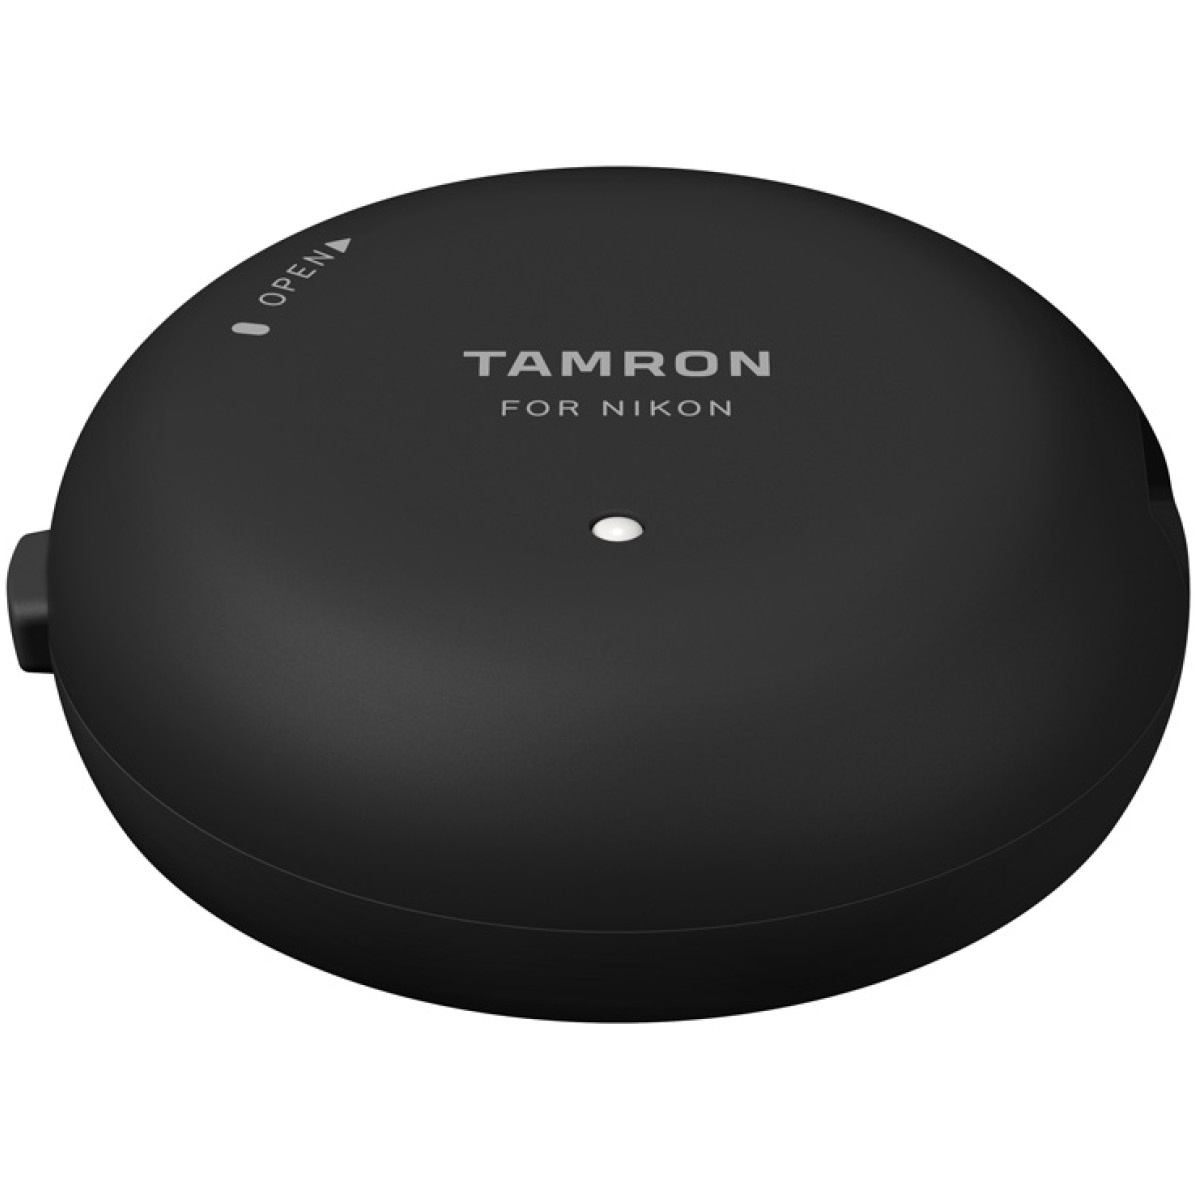 Tamron TAP-in Konsole für Nikon